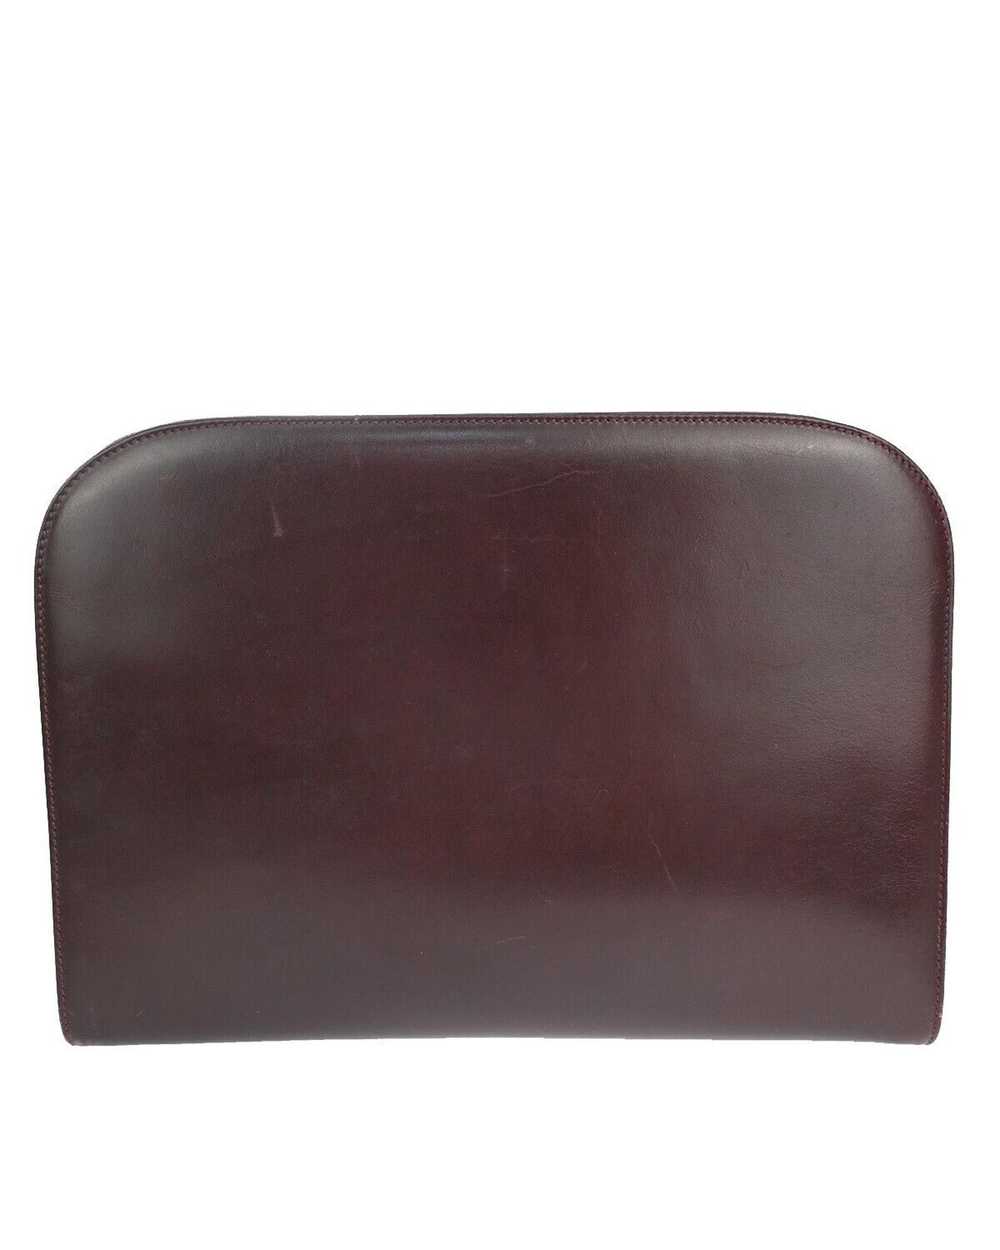 Salvatore Ferragamo Burgundy Leather Shoulder Bag - image 3